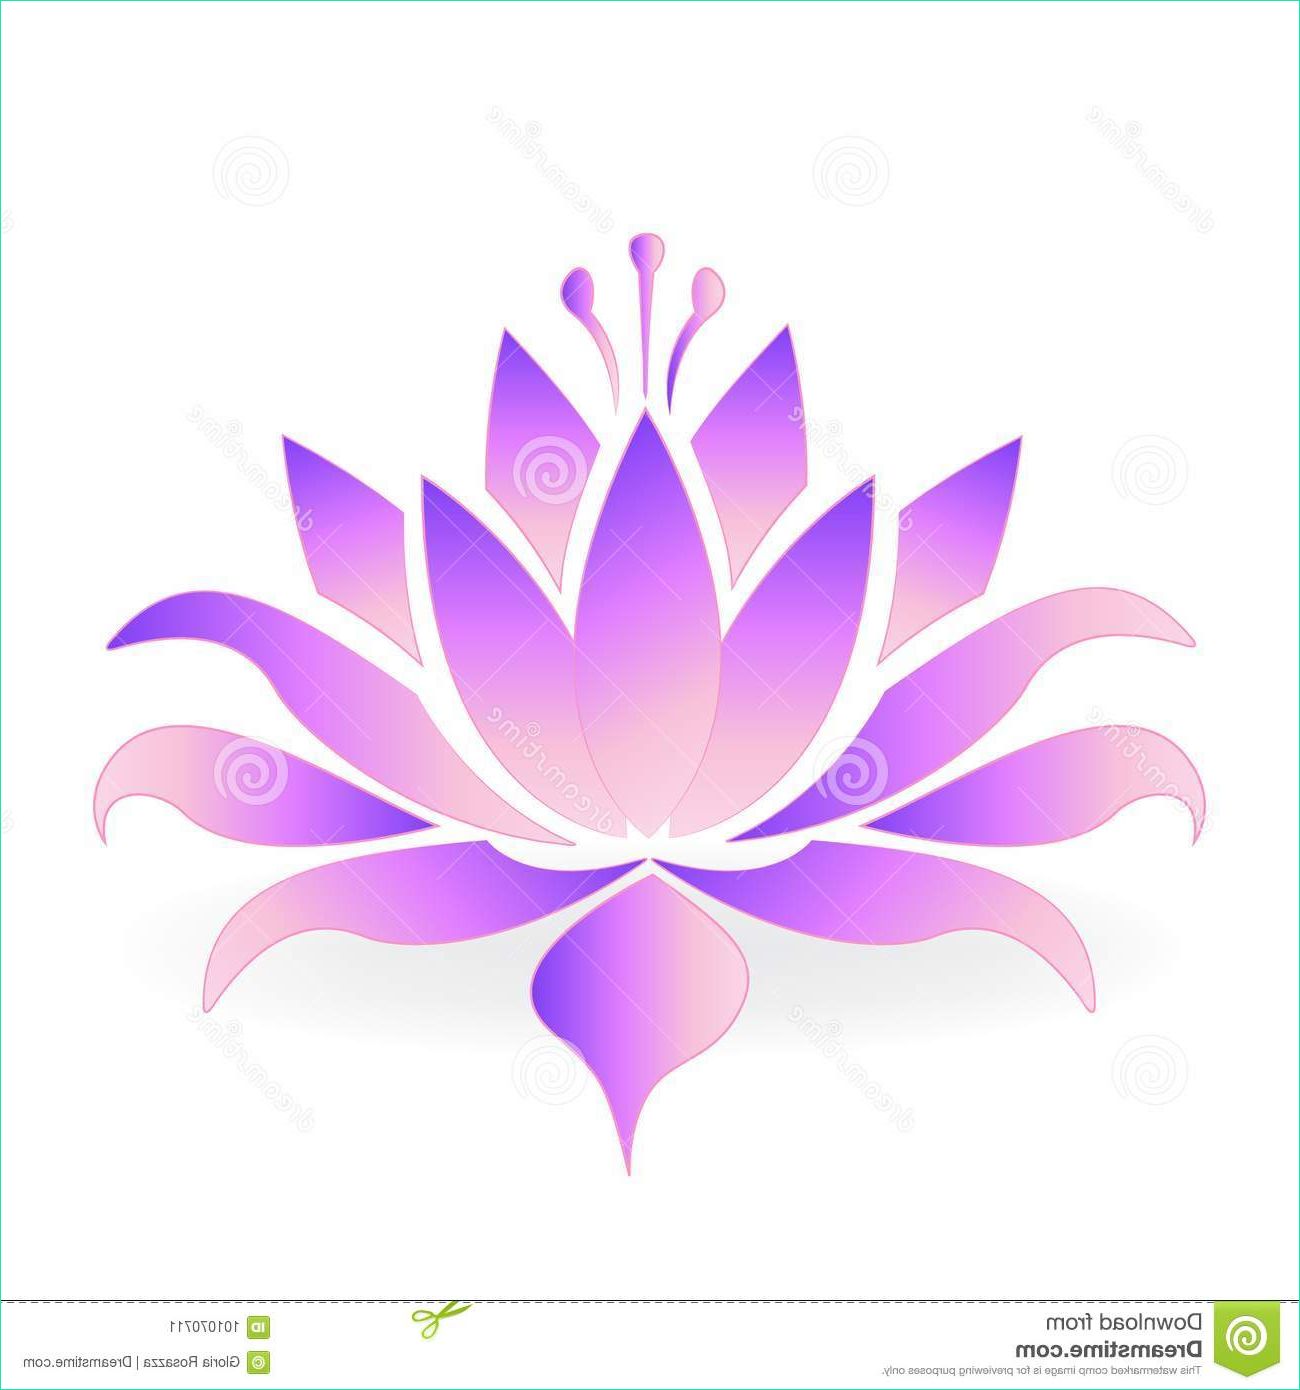 Dessin Fleur De Lotus Unique Photos Postcard with Abstract Water Lilies Cartoon Vector